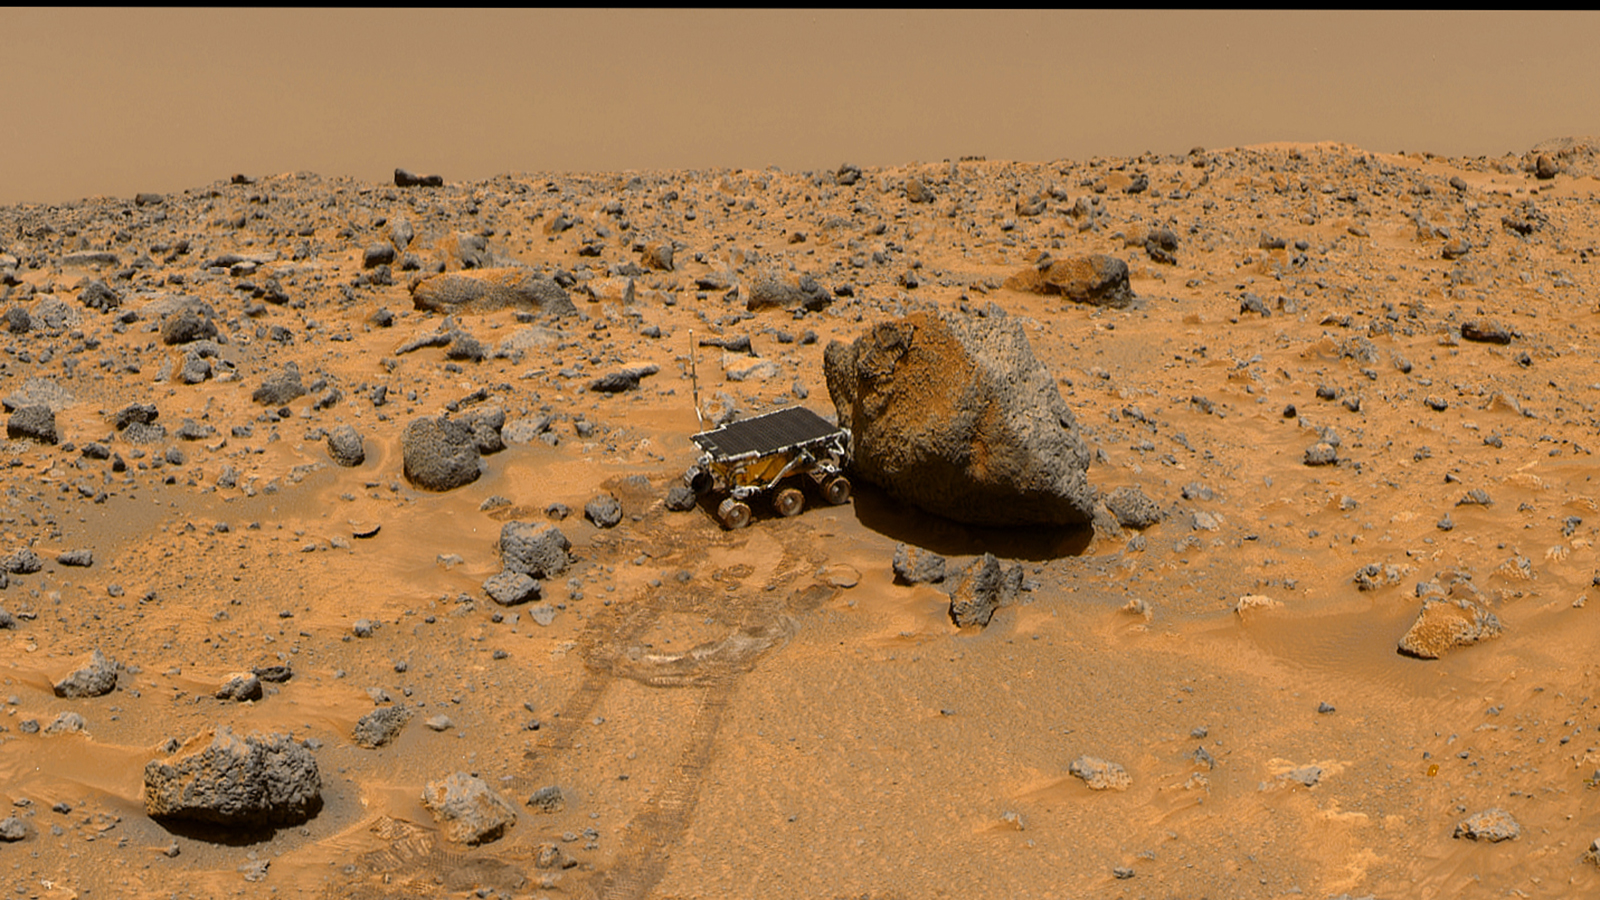 22年前的今天,火星探路者刚刚传回第一张照片,就把科学家急坏了